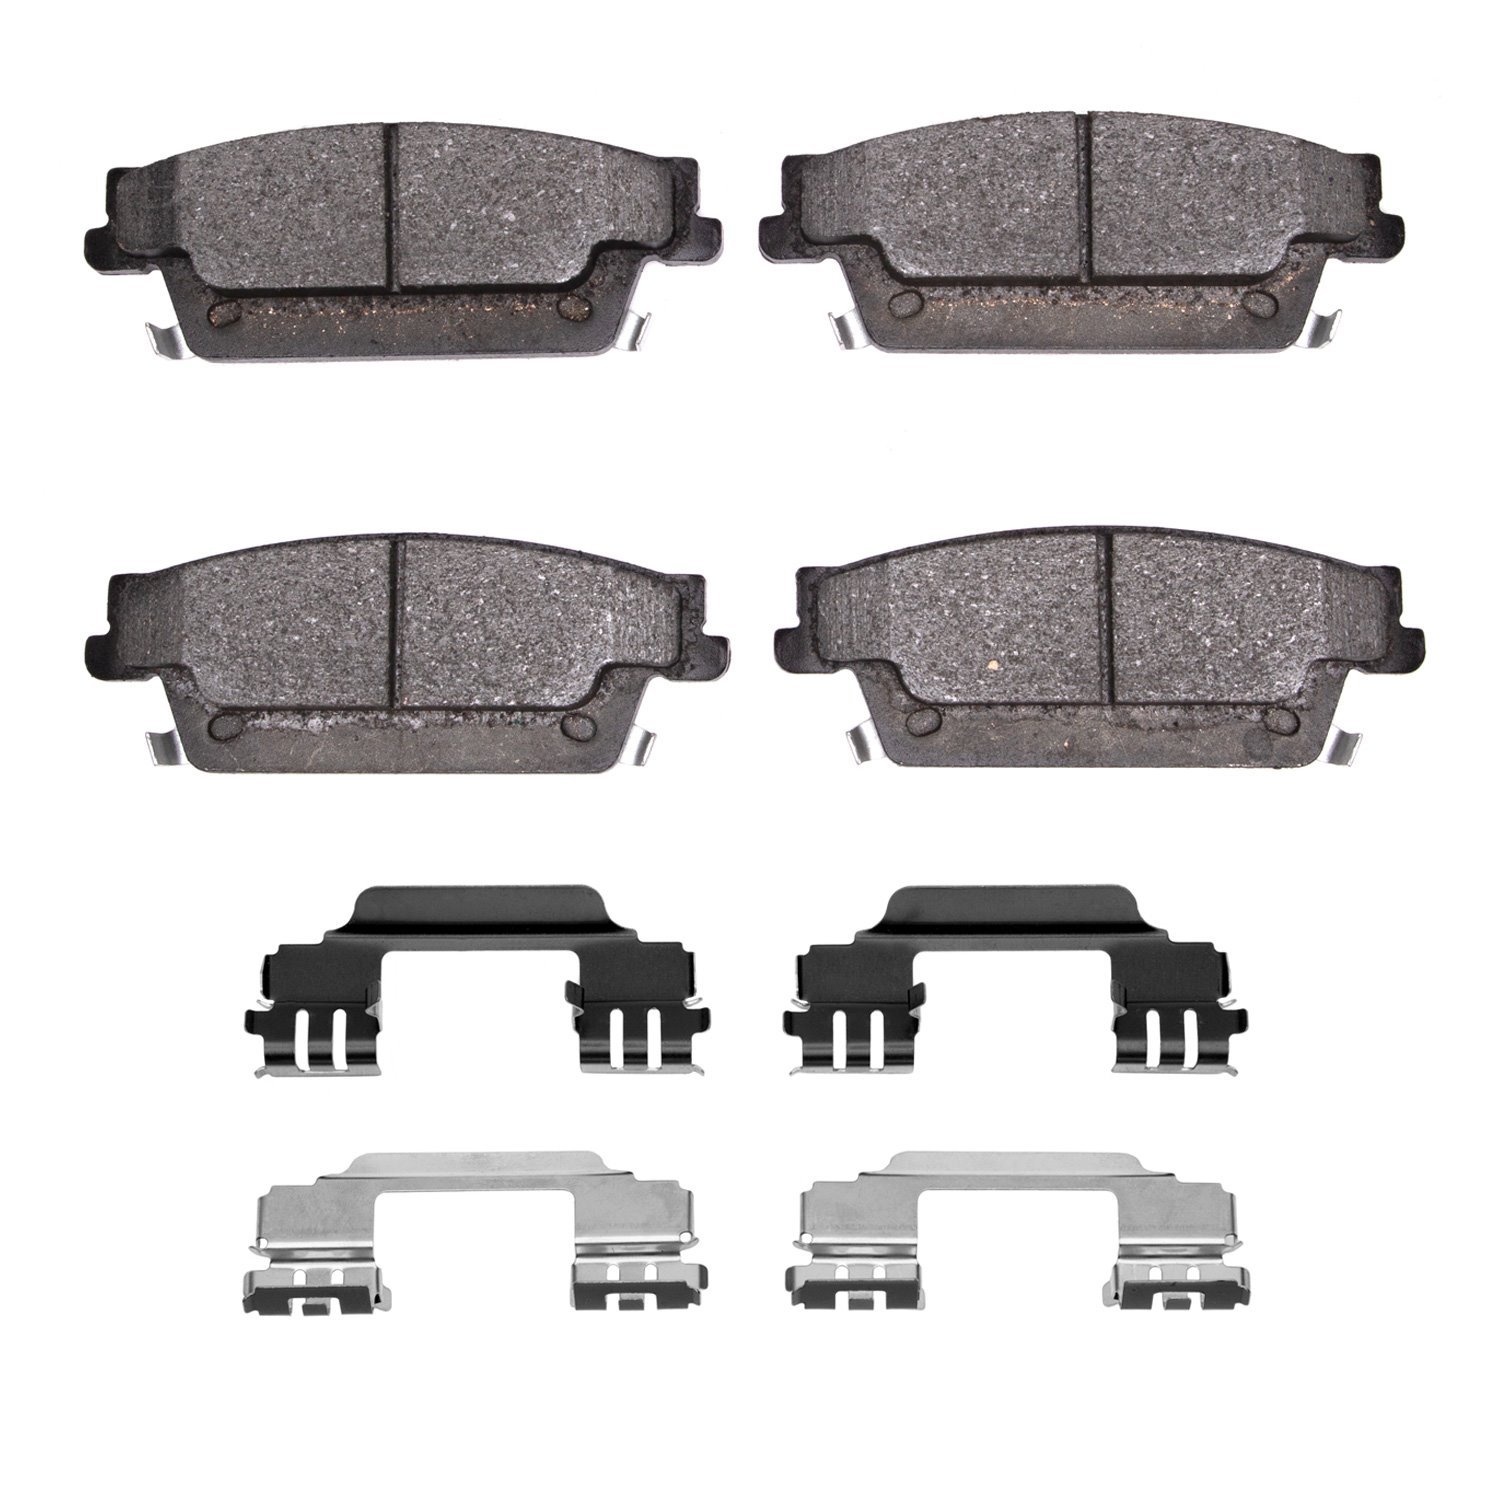 1310-1020-01 3000-Series Ceramic Brake Pads & Hardware Kit, 2004-2011 GM, Position: Rear